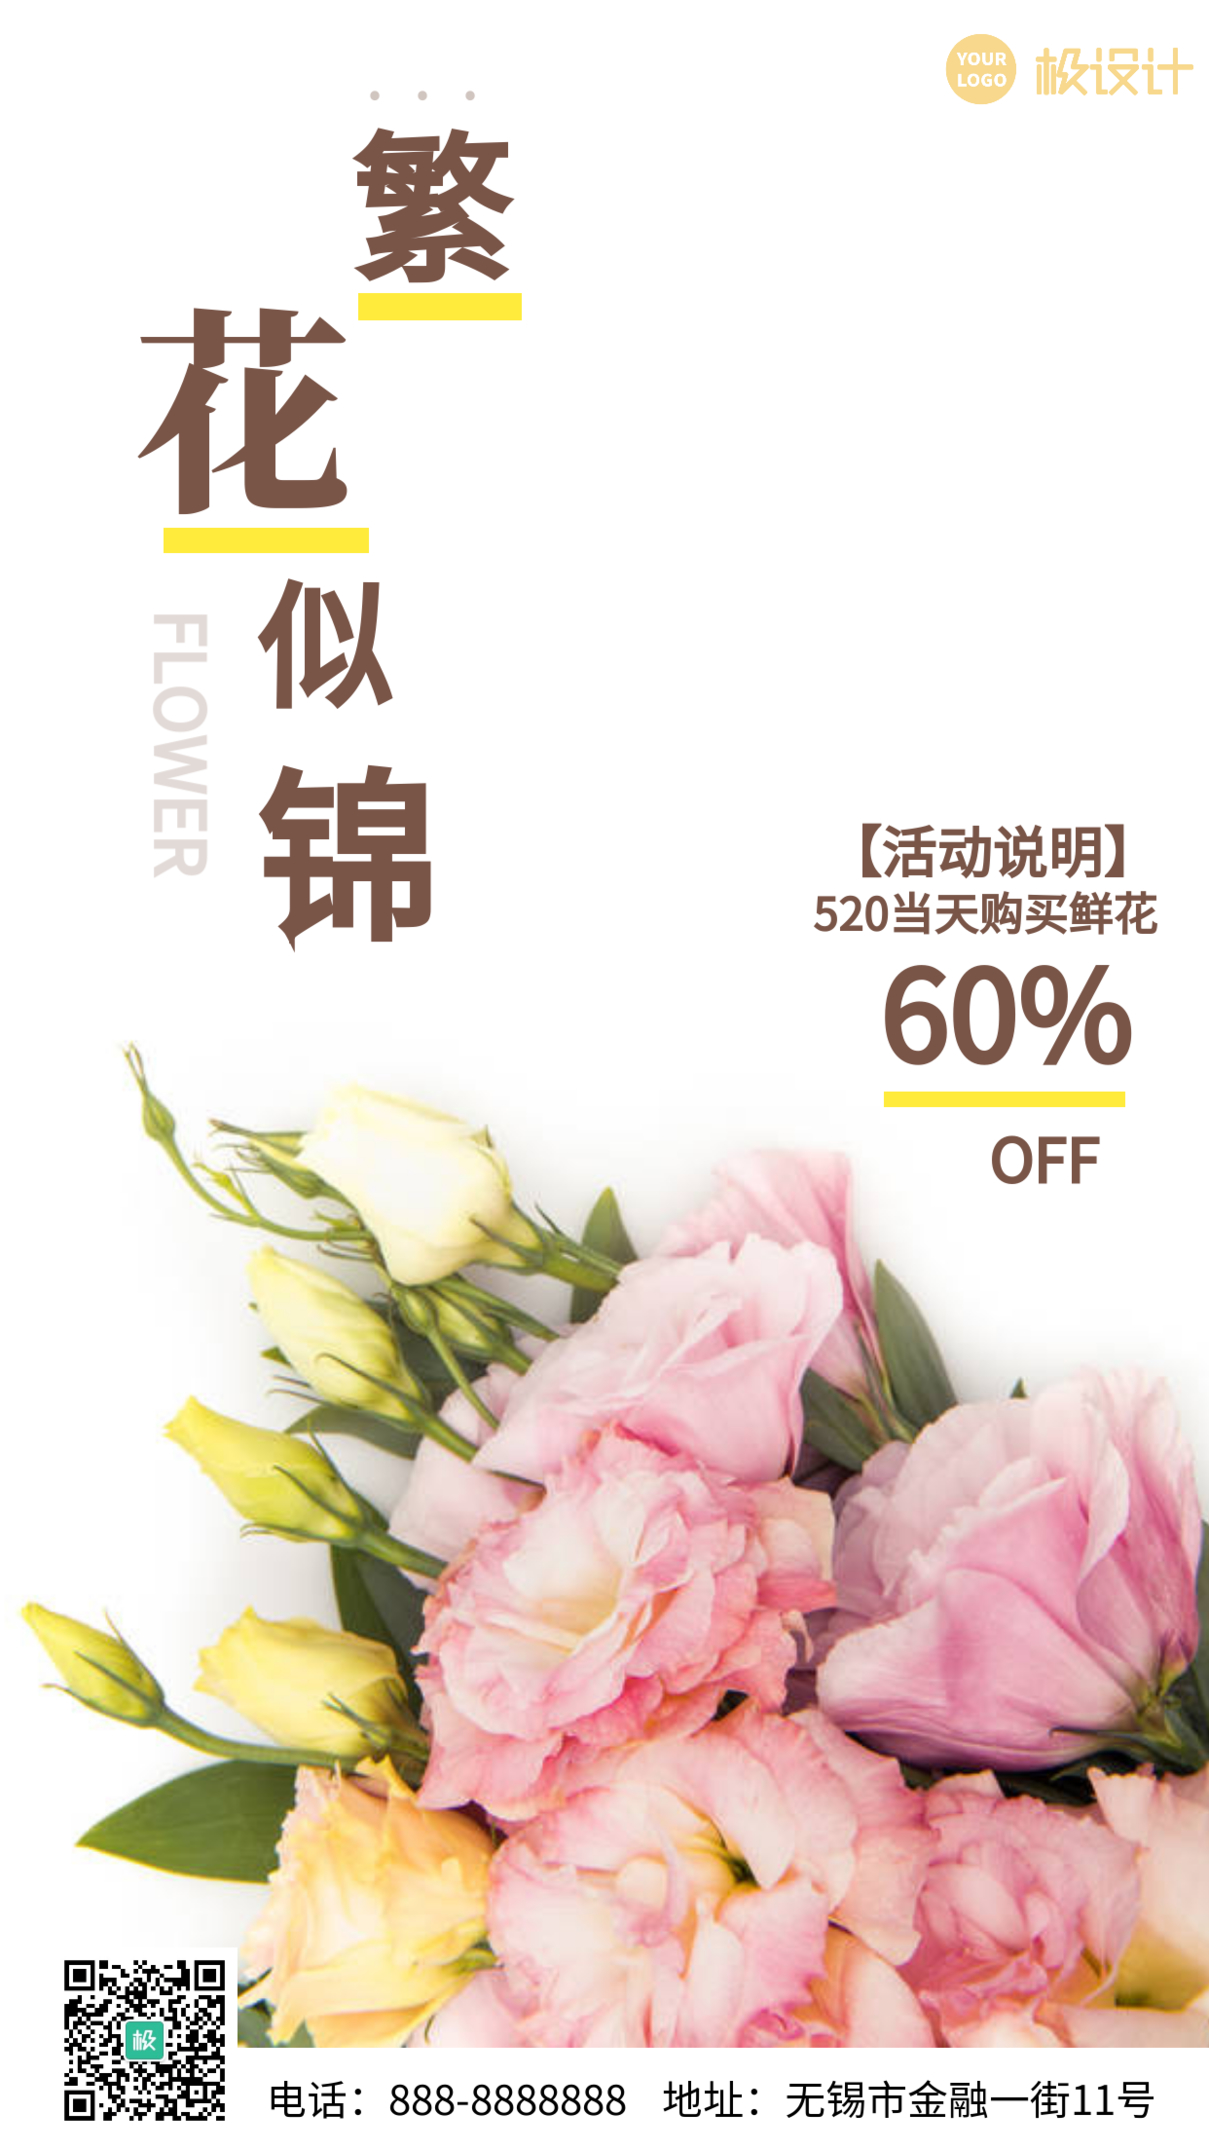 清新风520鲜花优惠活动手机海报